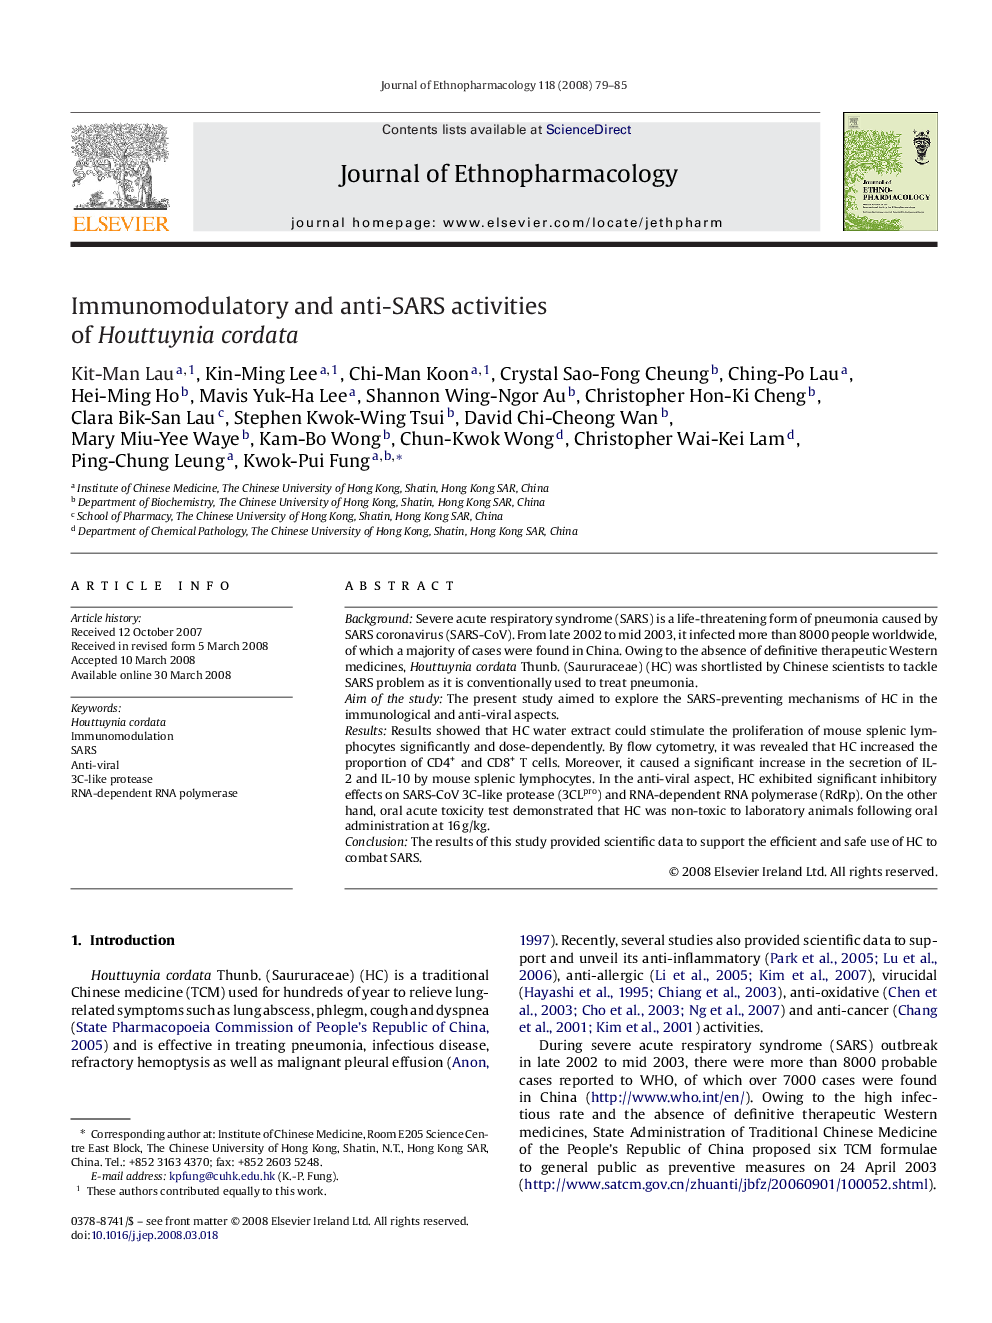 Immunomodulatory and anti-SARS activities of Houttuynia cordata